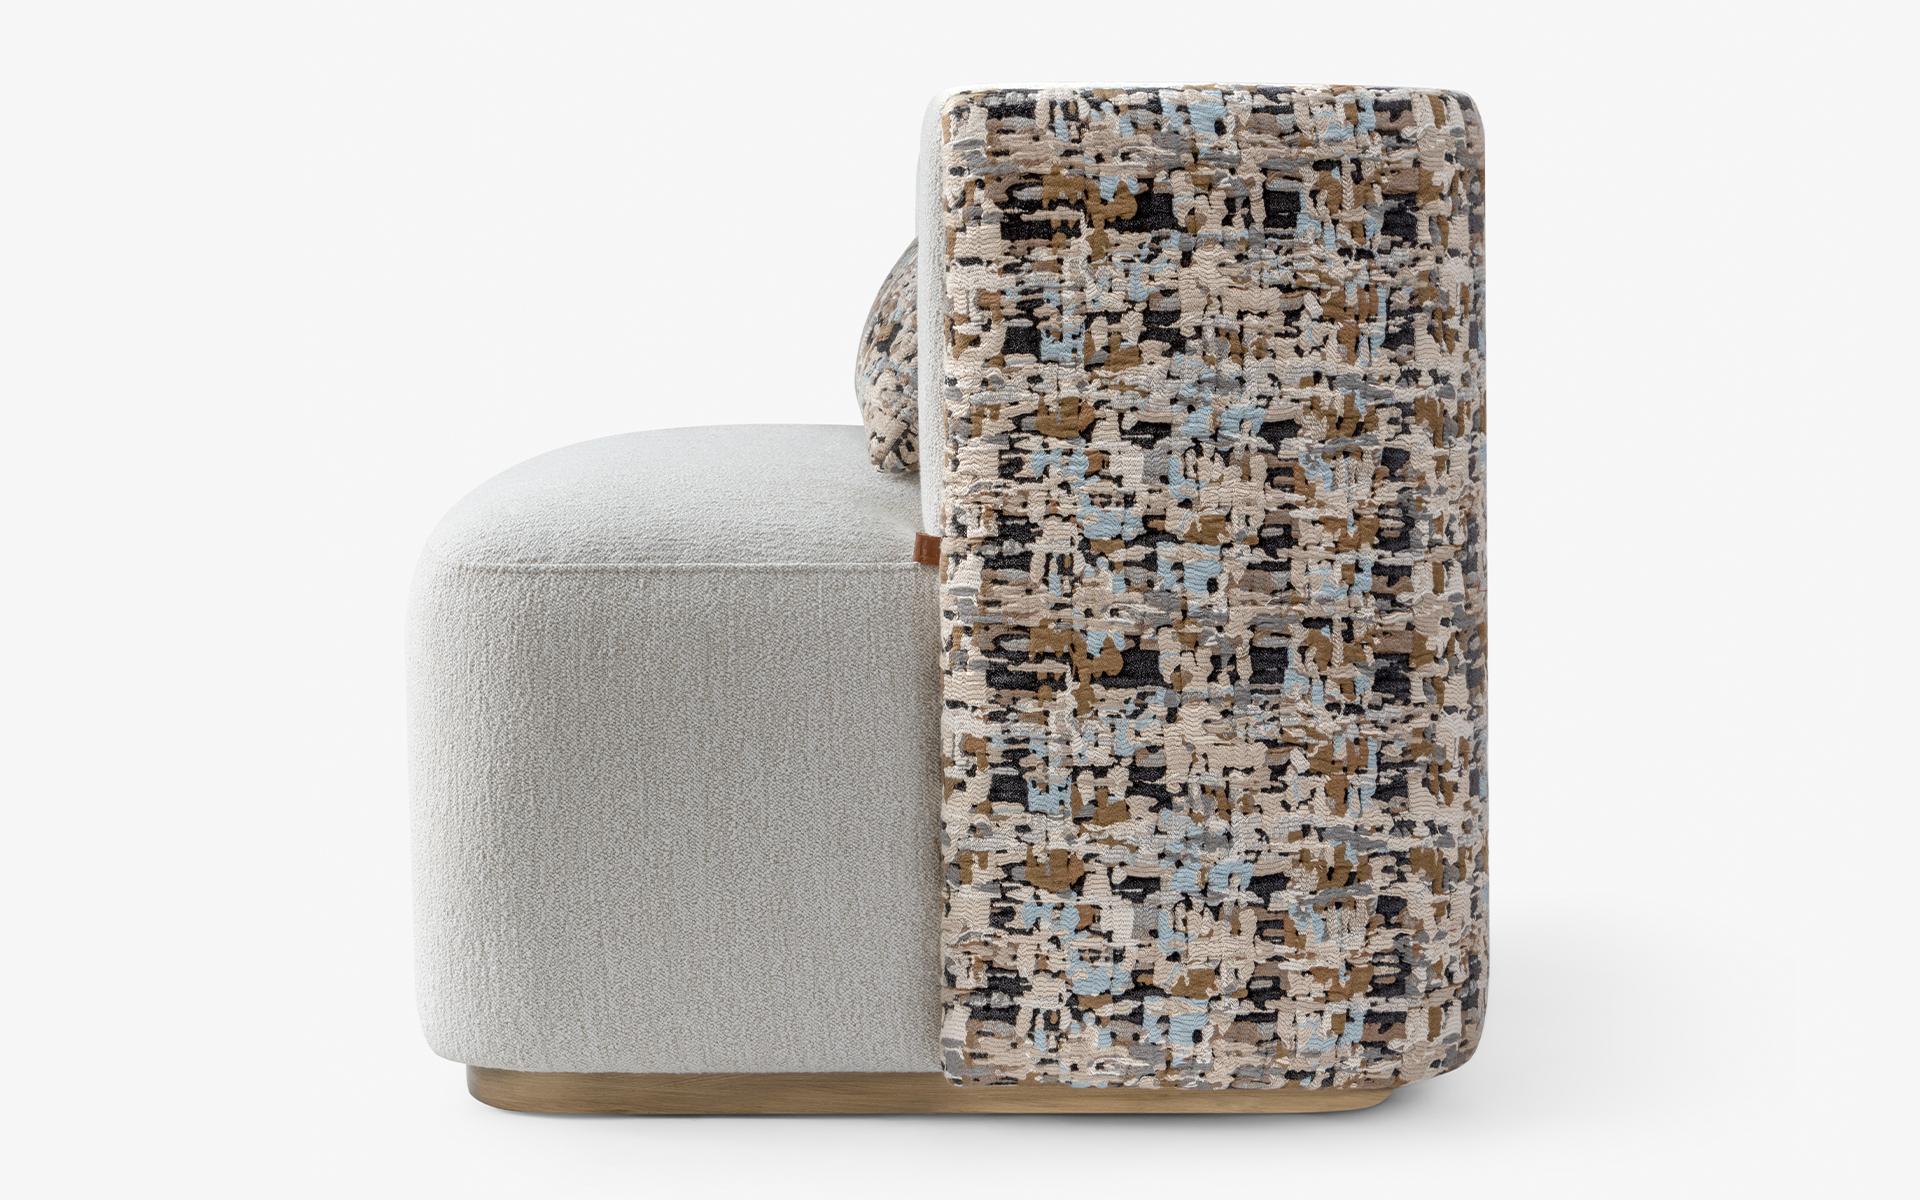 Die Serie PAPILLONNE hebt sich in jedem Bereich durch ihr auffälliges, modernes Design und ihre Materialvielfalt ab und verleiht Räumen mit ihrem minimalen Erscheinungsbild ein völlig neues Gesicht. Der Sessel PAPILLONNE zeichnet sich durch seine